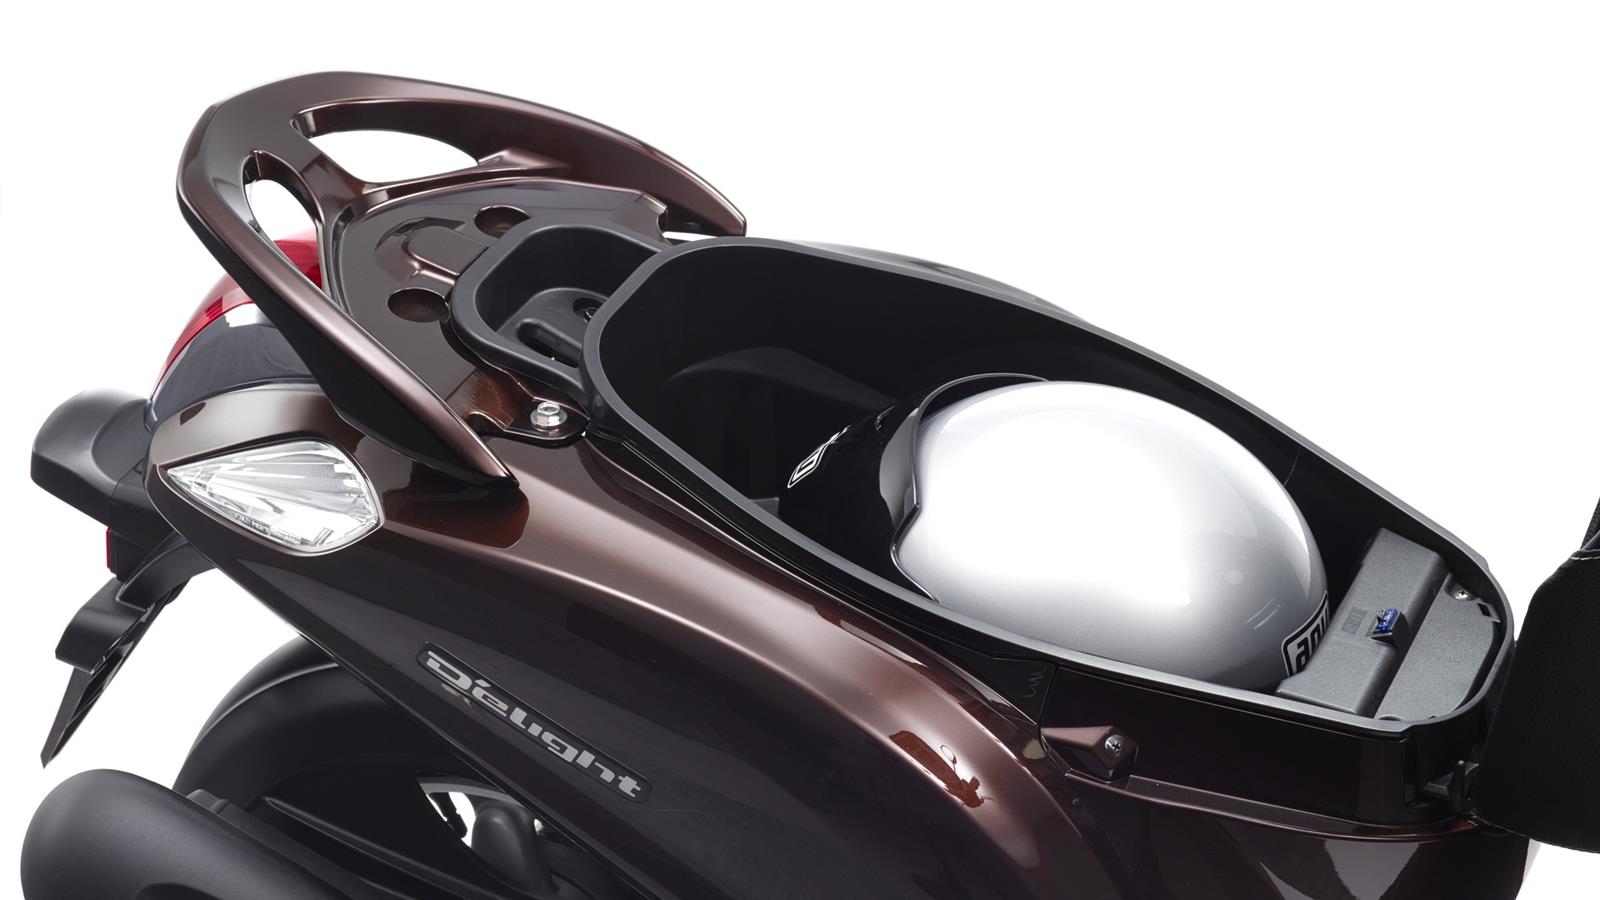 Klasszikus megjelenés Yamaha minséggel Klasszikus stílusú karosszériájával az új D'elight az idtlen jó megjelenést Yamaha minséggel ötvözi.